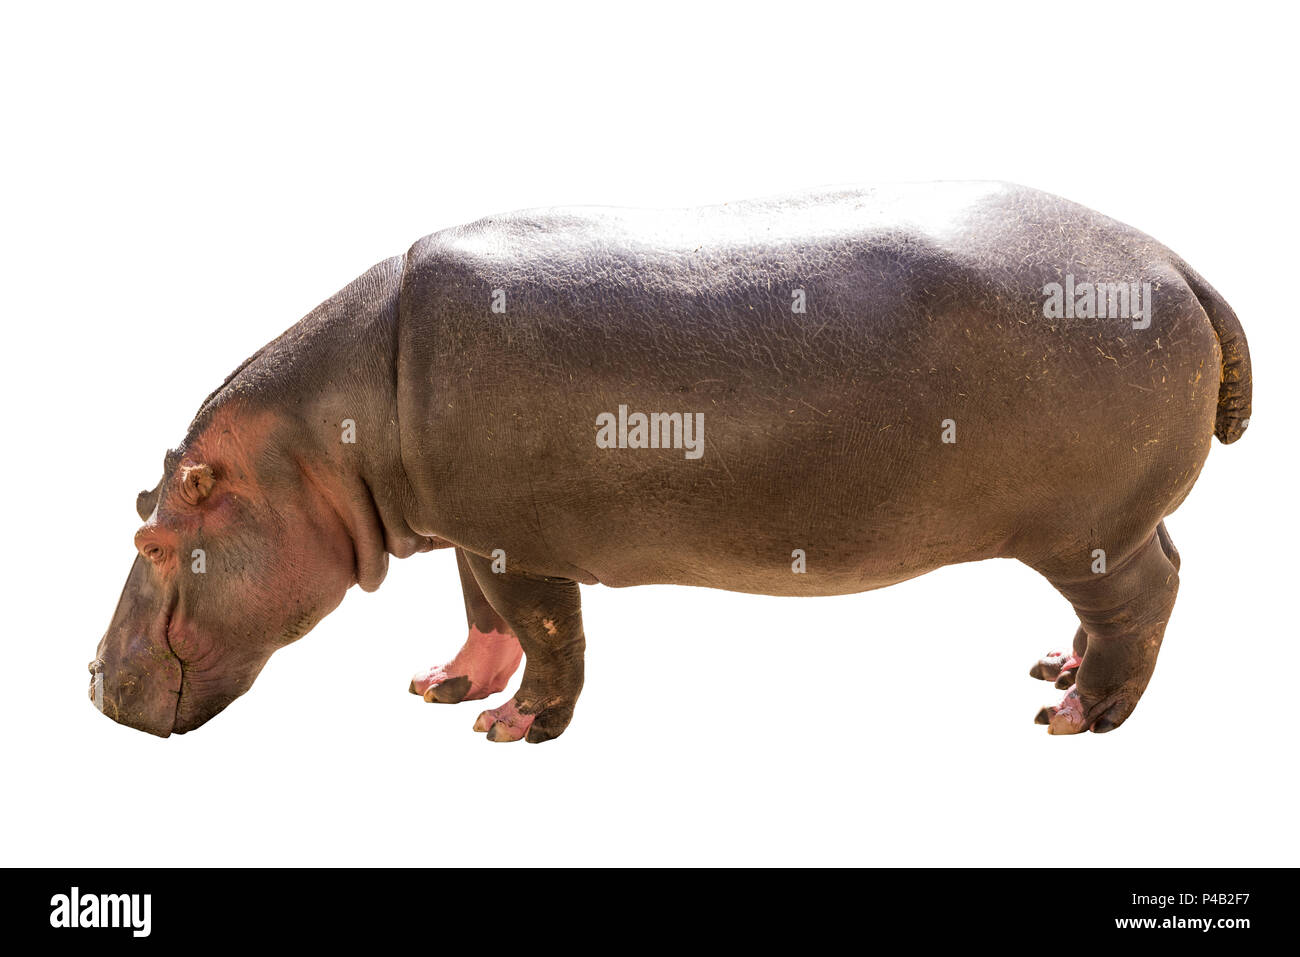 Blick auf einen Gemeinsamen hippopotamus isoliert auf weißem Hintergrund, in Südafrika, in Afrika gesehen. Nilpferde sind das drittgrößte Land Säugetier und sehr gefährlich, Stockfoto